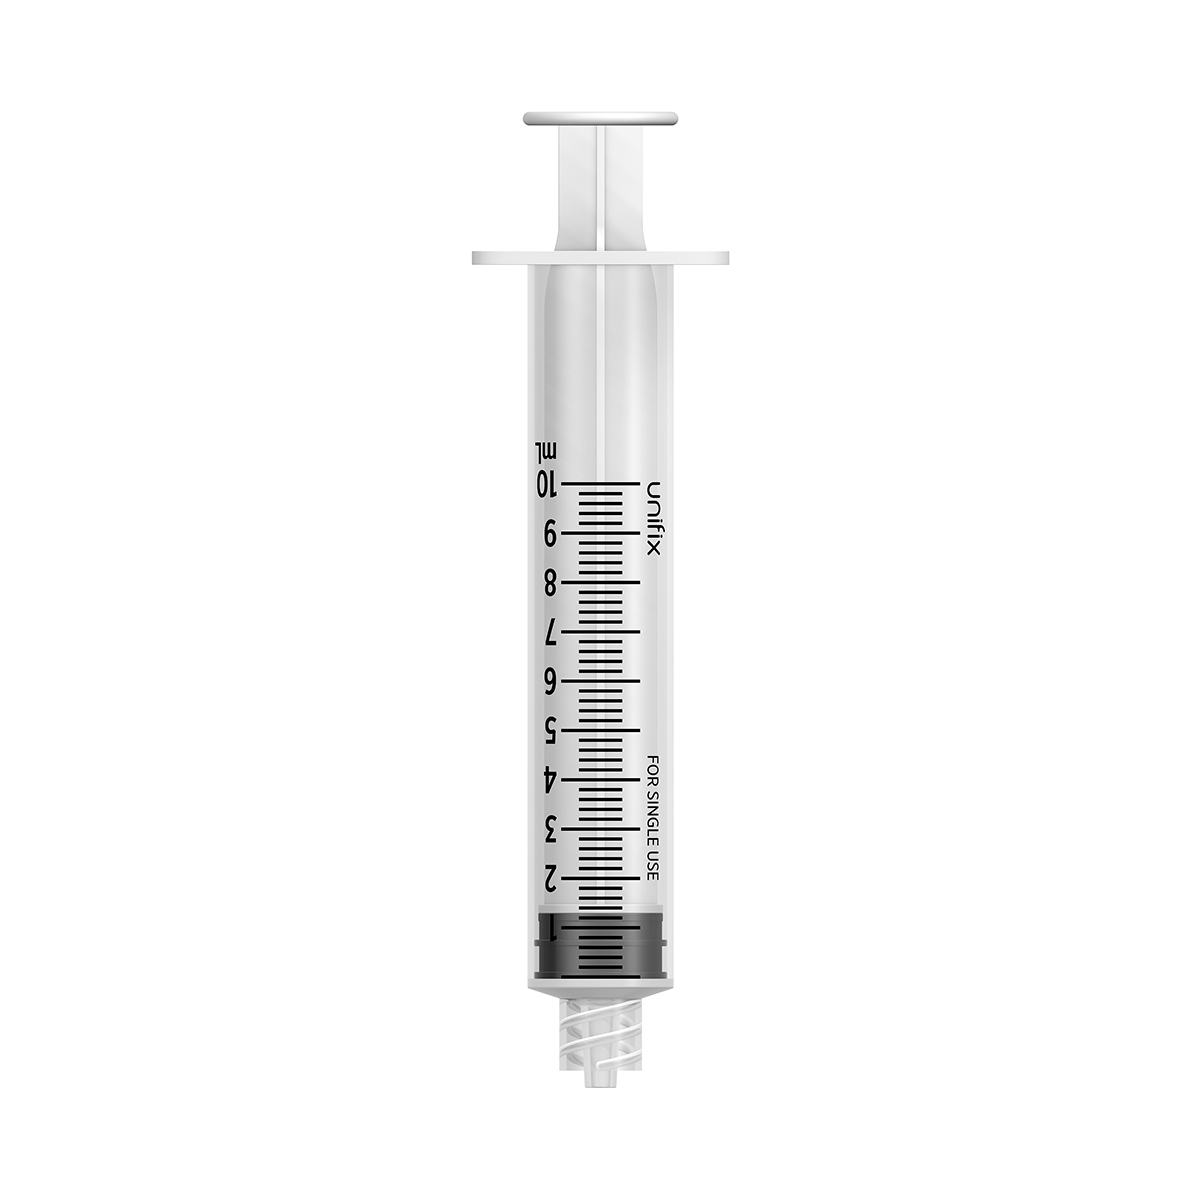 Unifix 10ml luer lock syringe